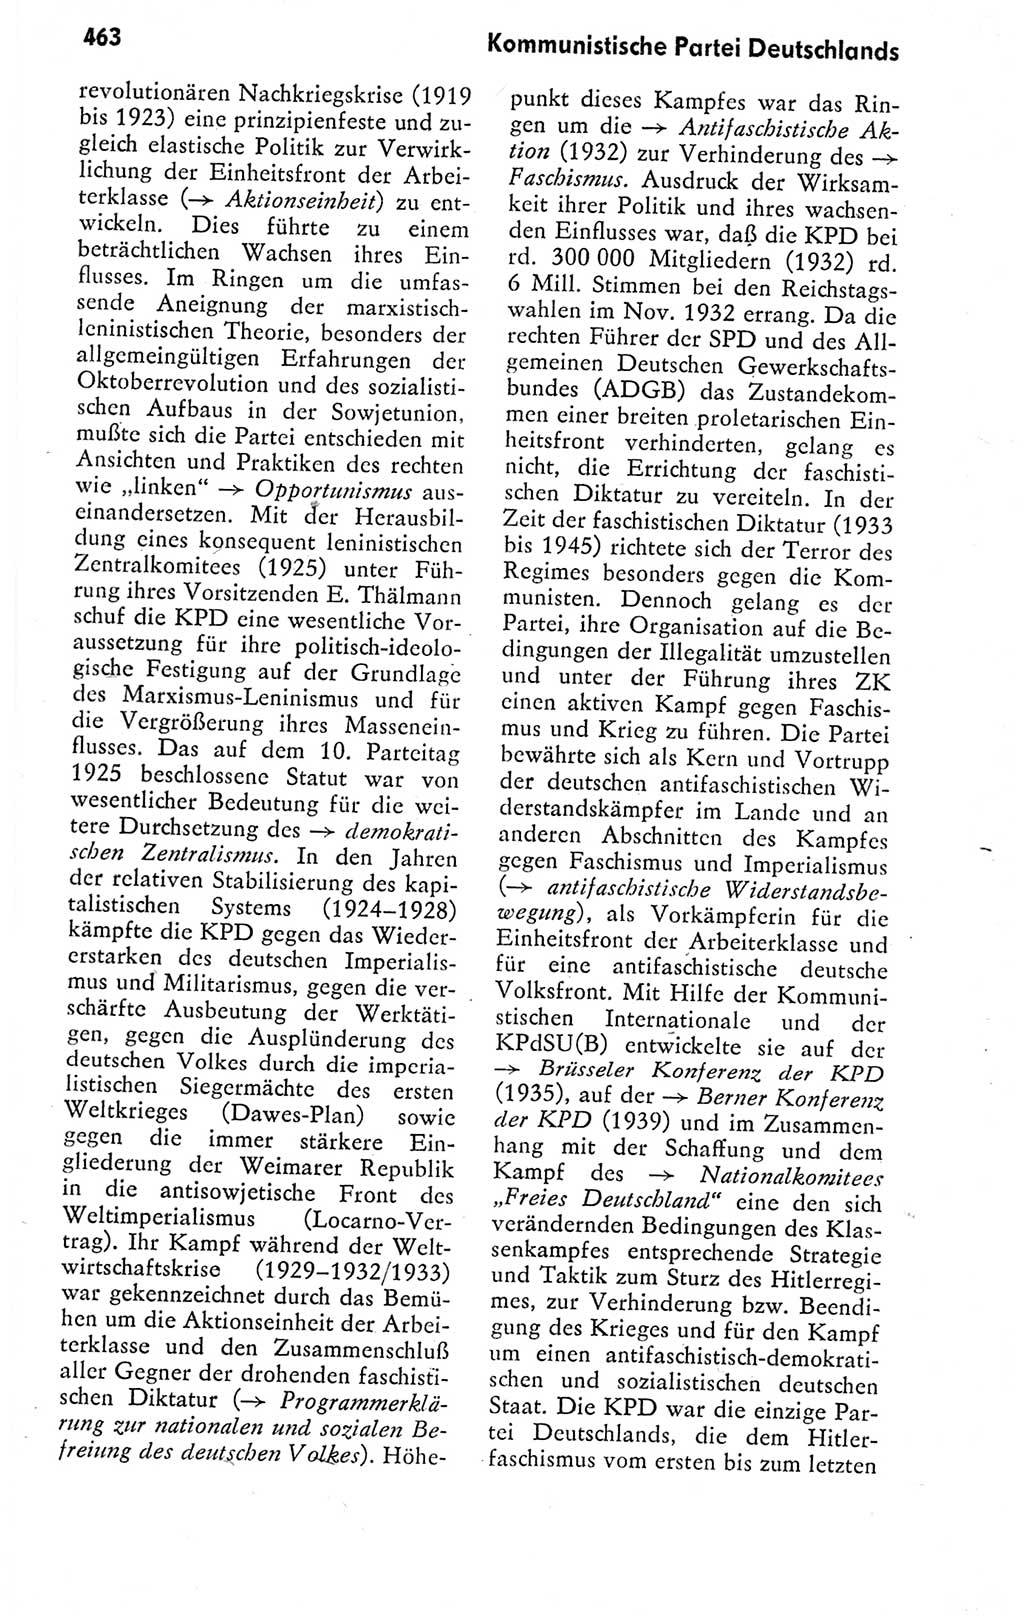 Kleines politisches Wörterbuch [Deutsche Demokratische Republik (DDR)] 1978, Seite 463 (Kl. pol. Wb. DDR 1978, S. 463)